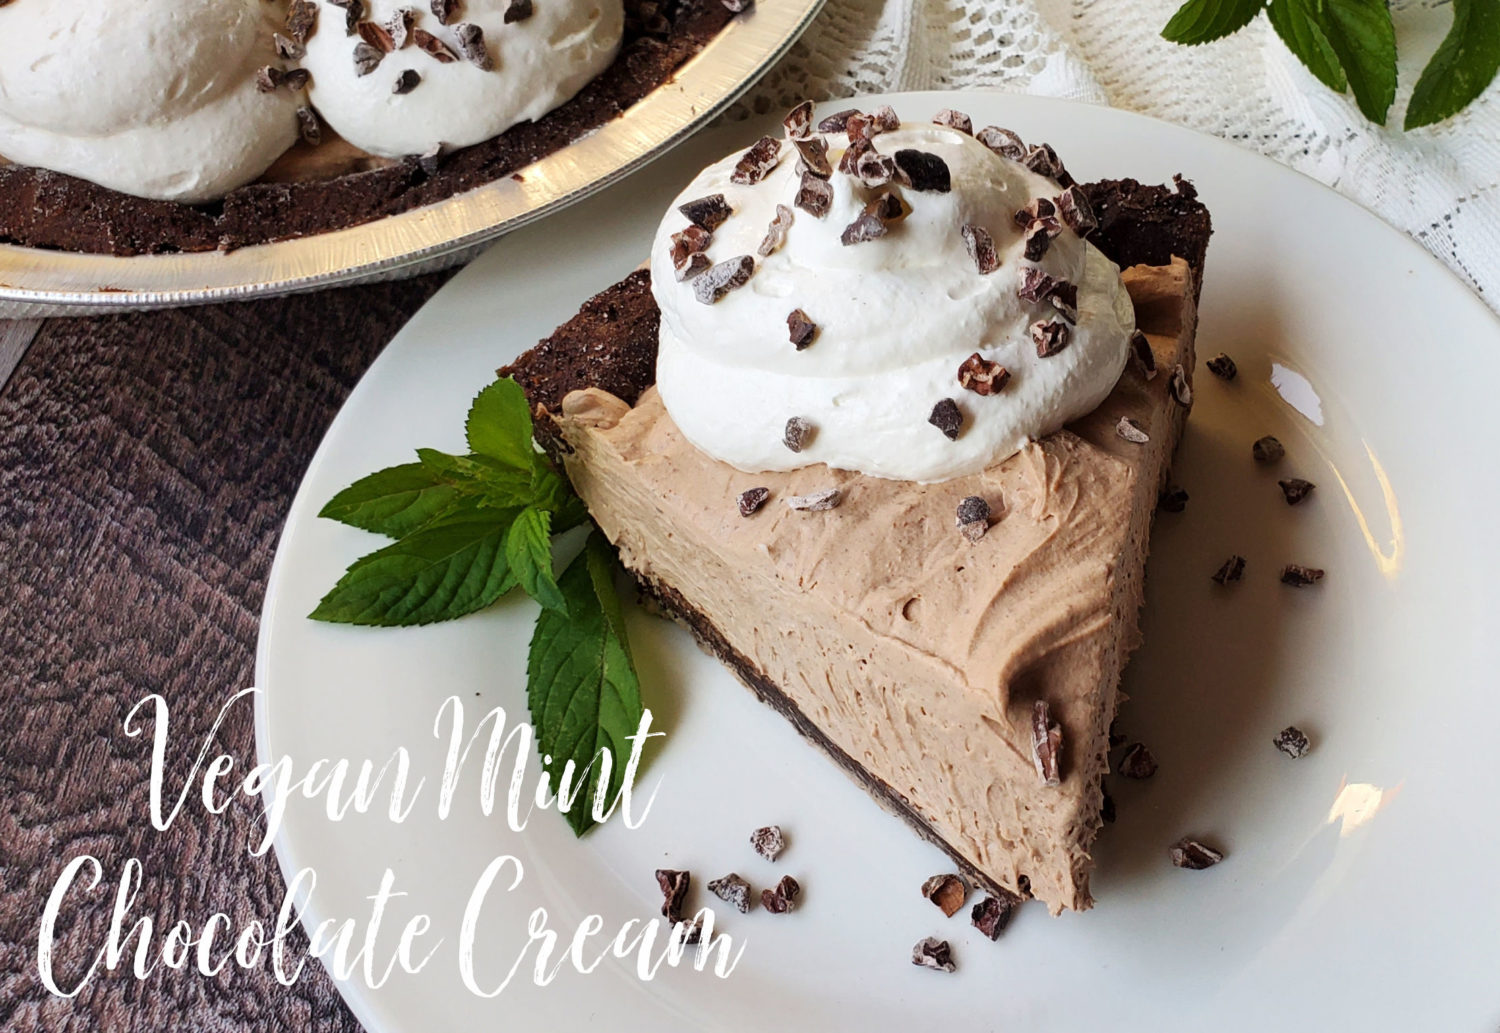 Vegan Mint Chocolate Cream Pie ist eine himmlisch seidige, leicht gesüßte cremige Minzfüllung, die alles andere als vegan schmeckt.